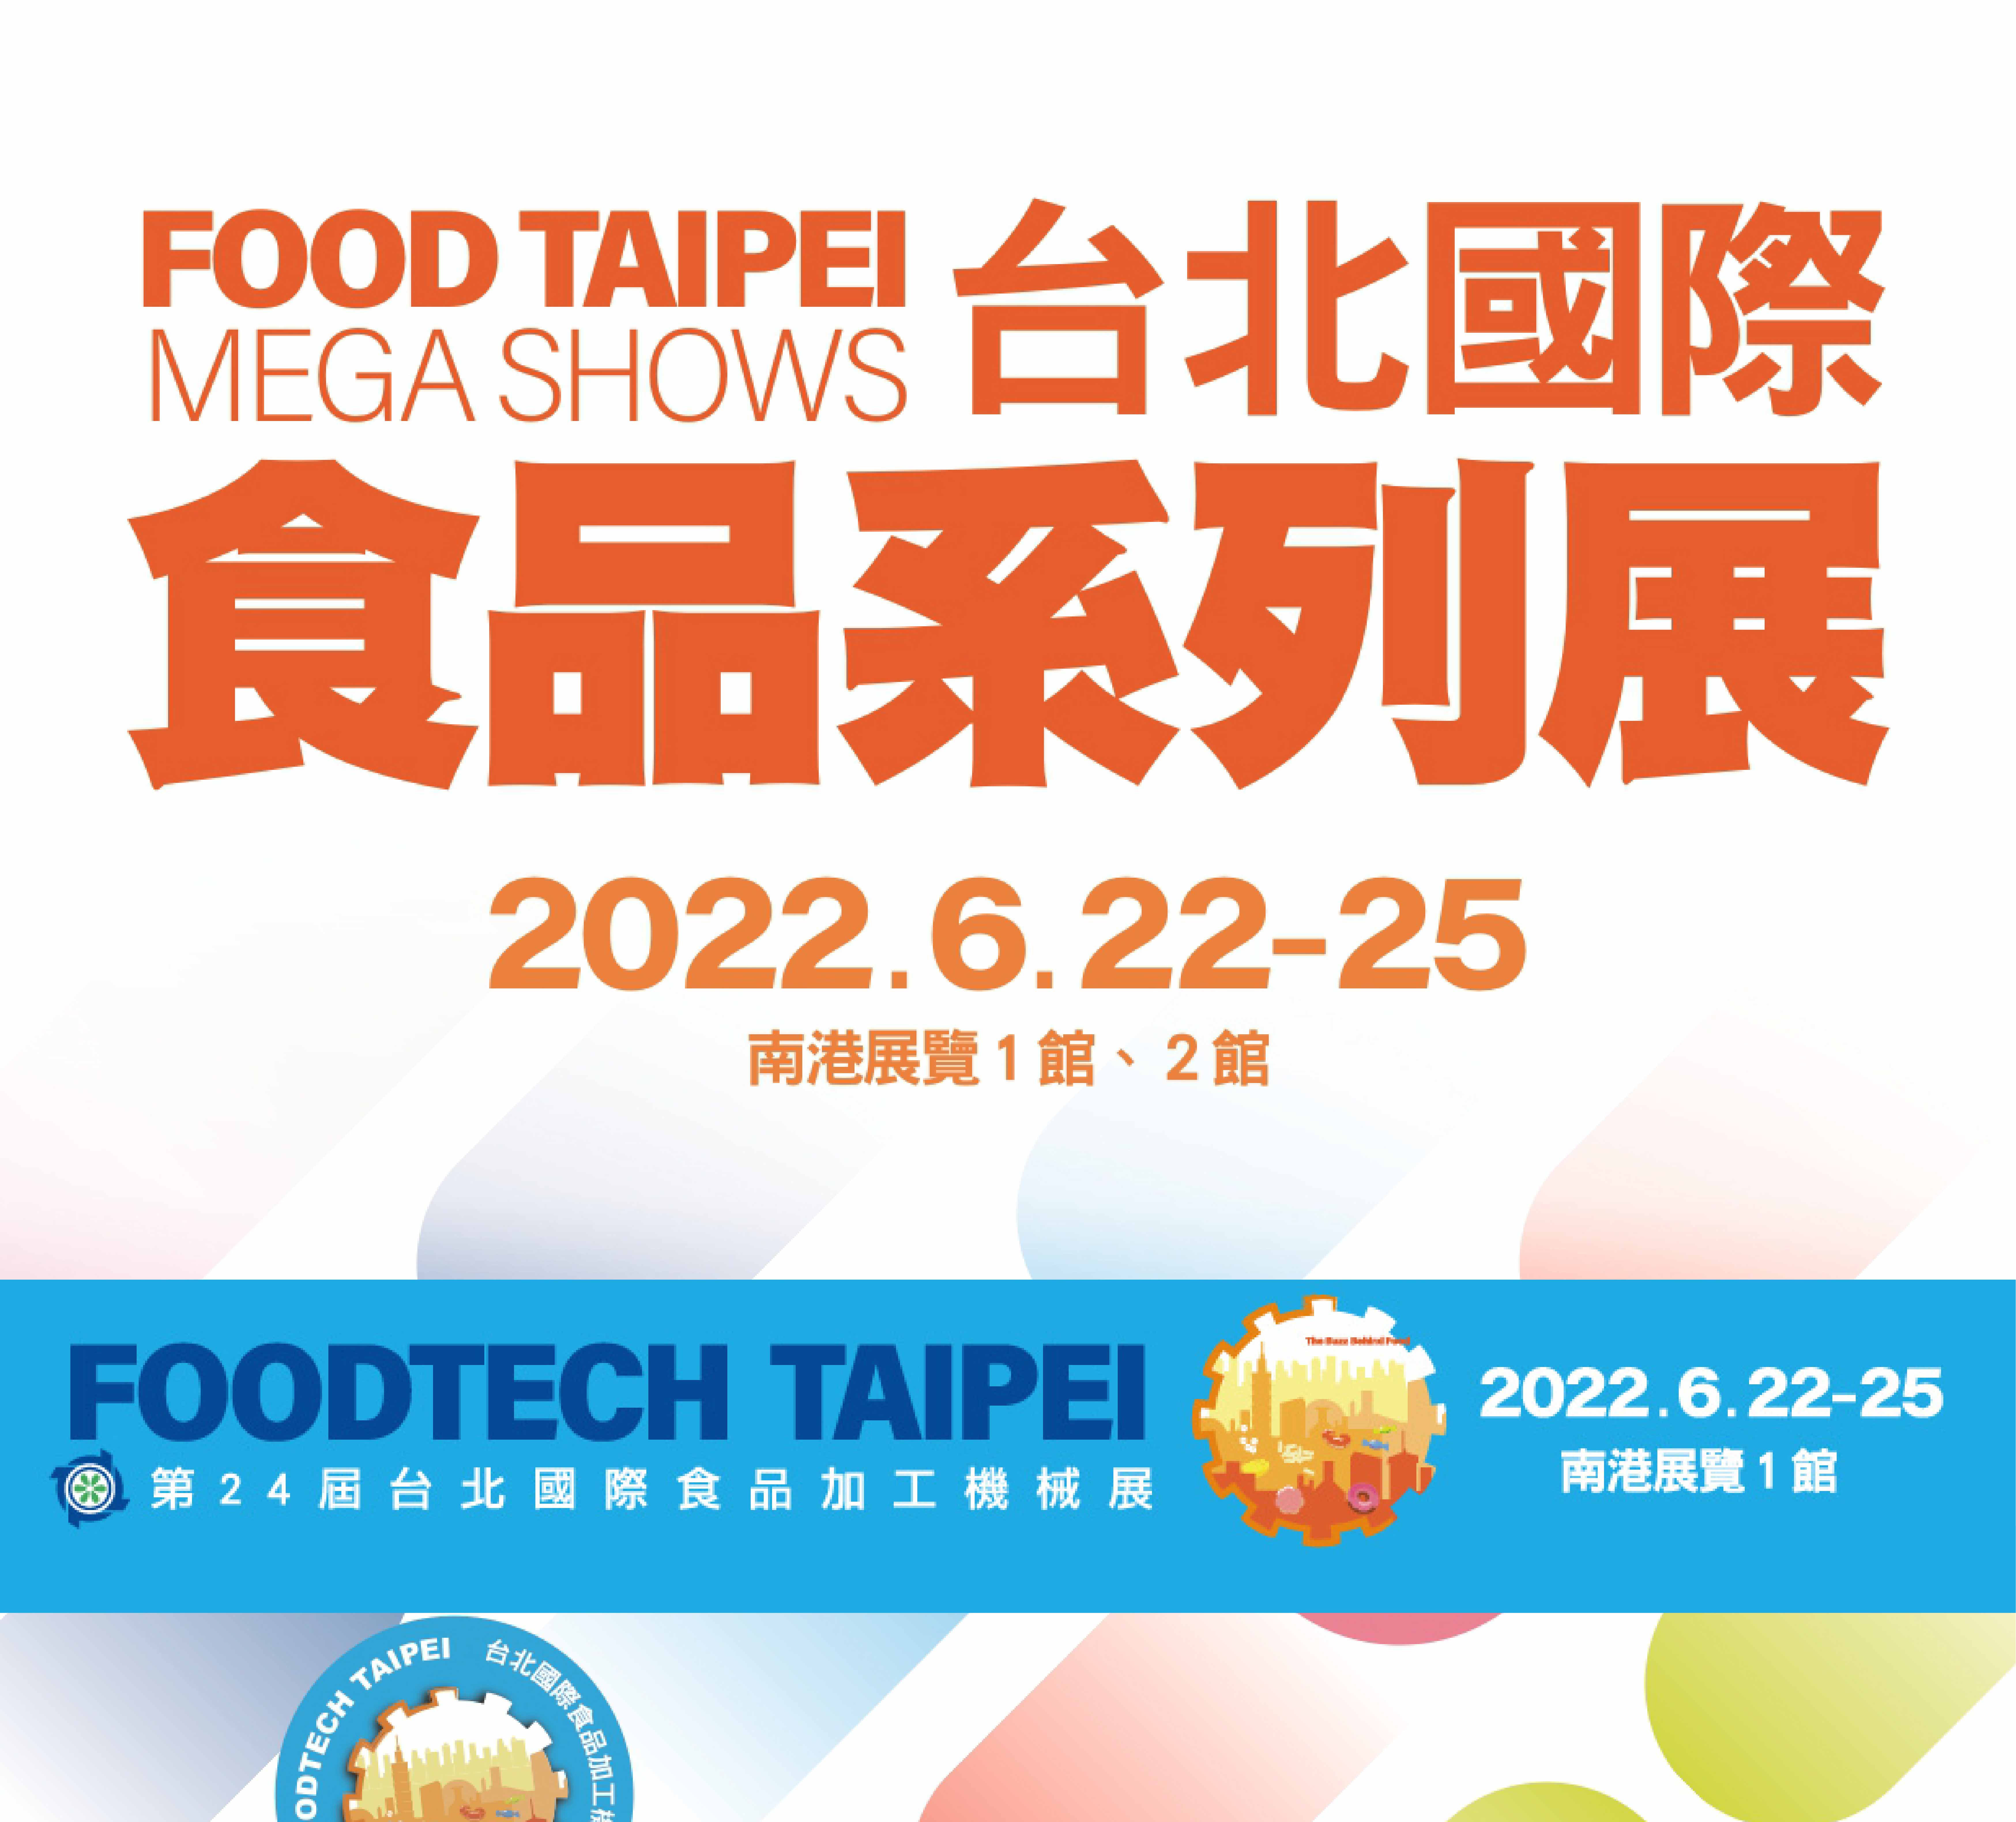 The 24th Foodtech Taipei